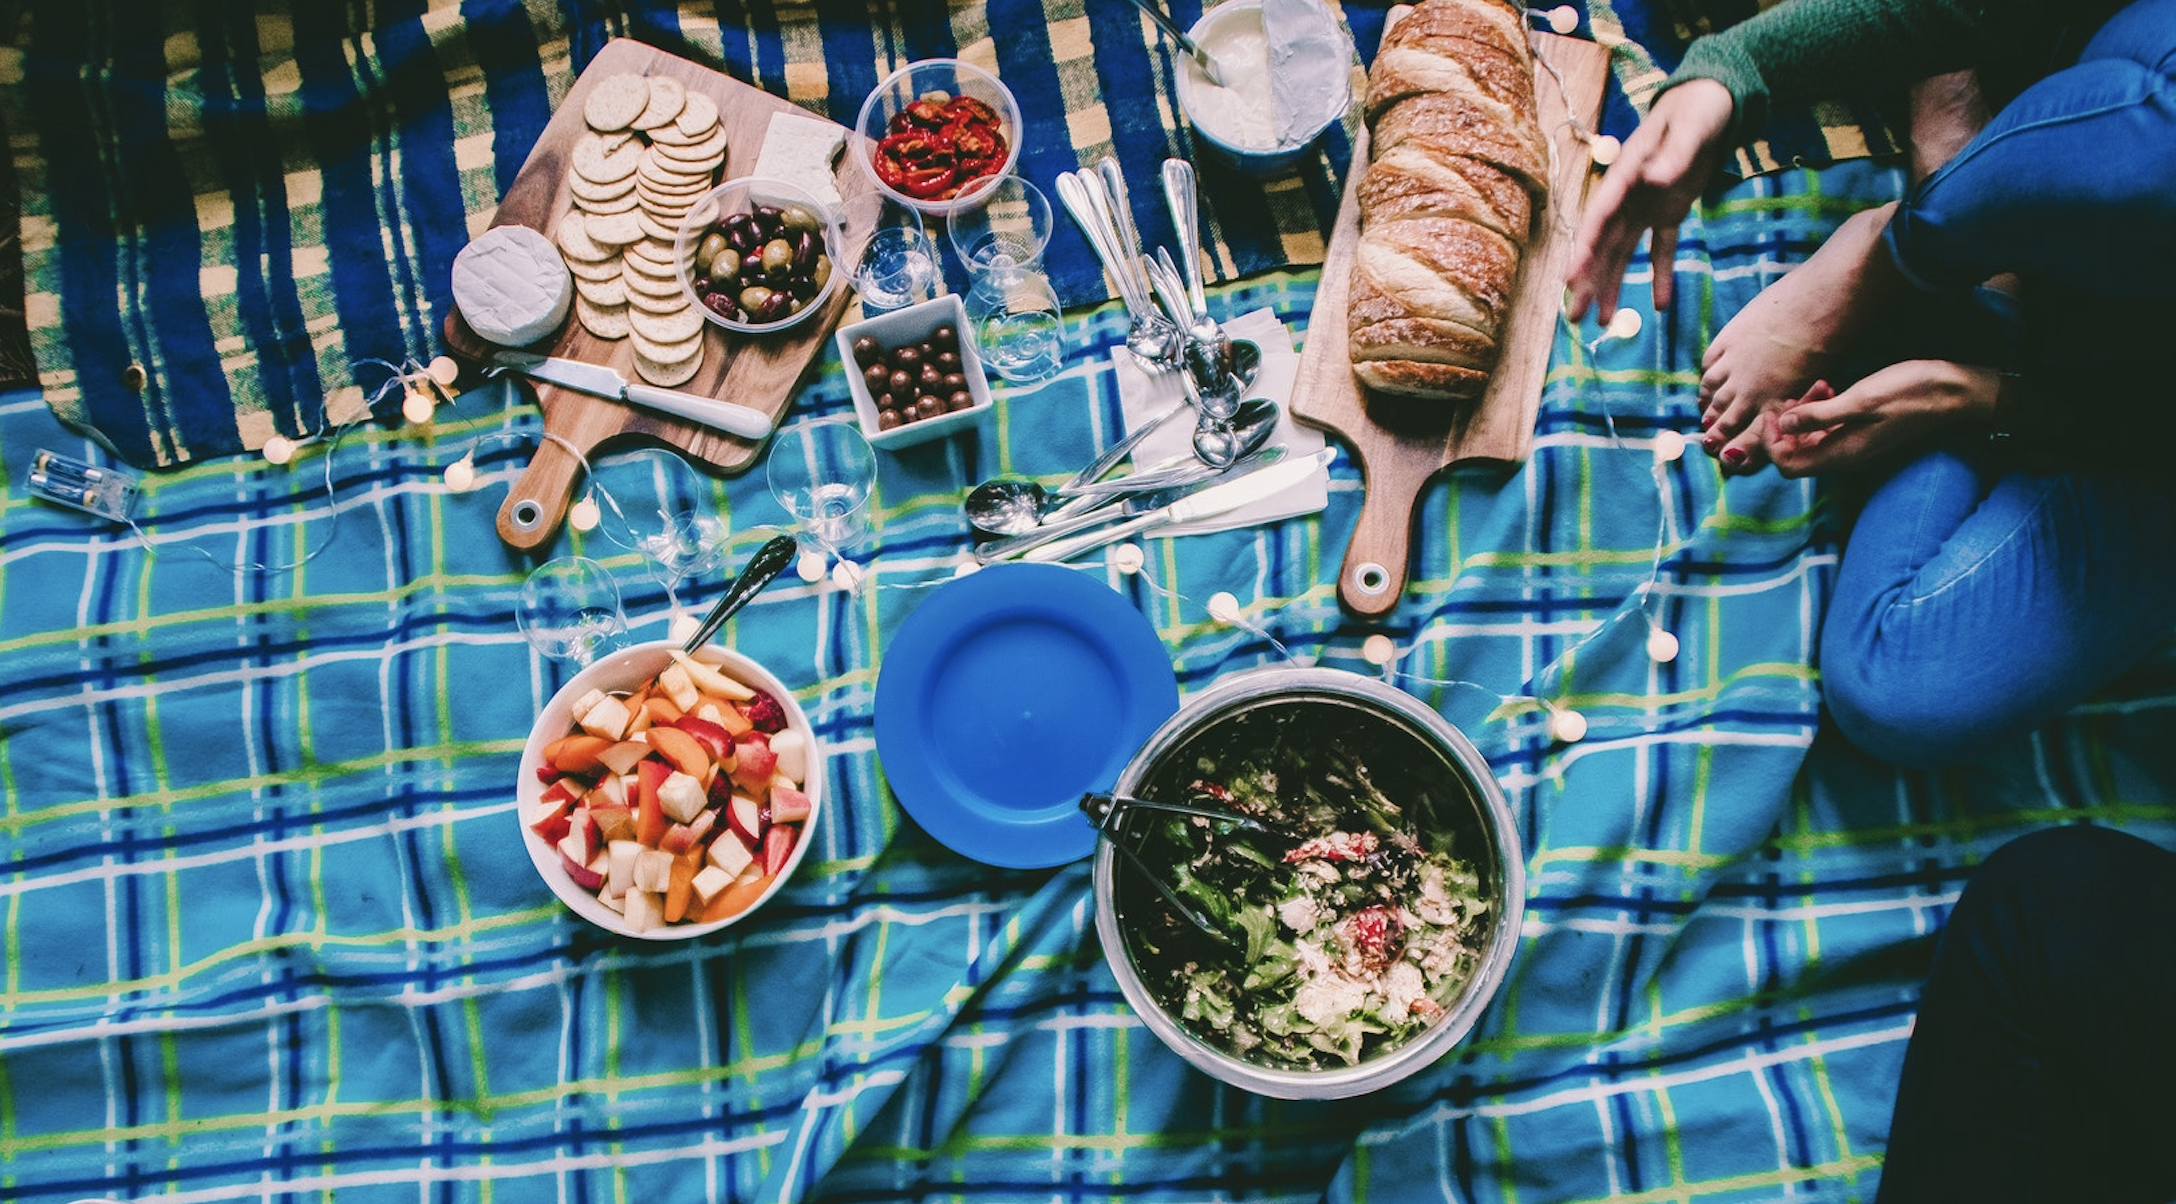 Tips voor de perfecte picknick